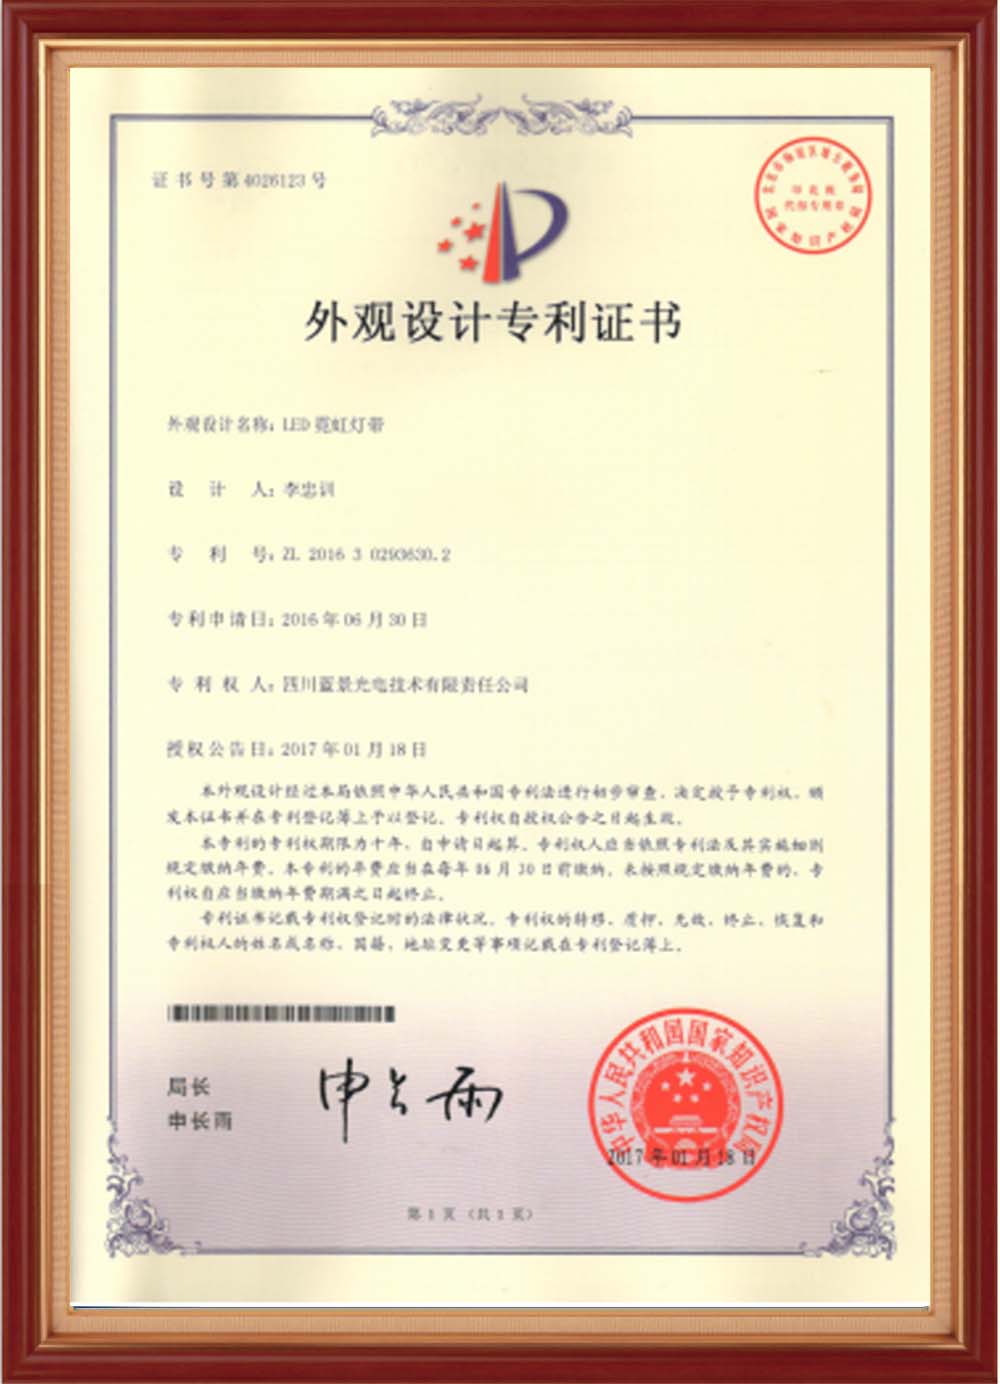 Certificaat-01 (1)